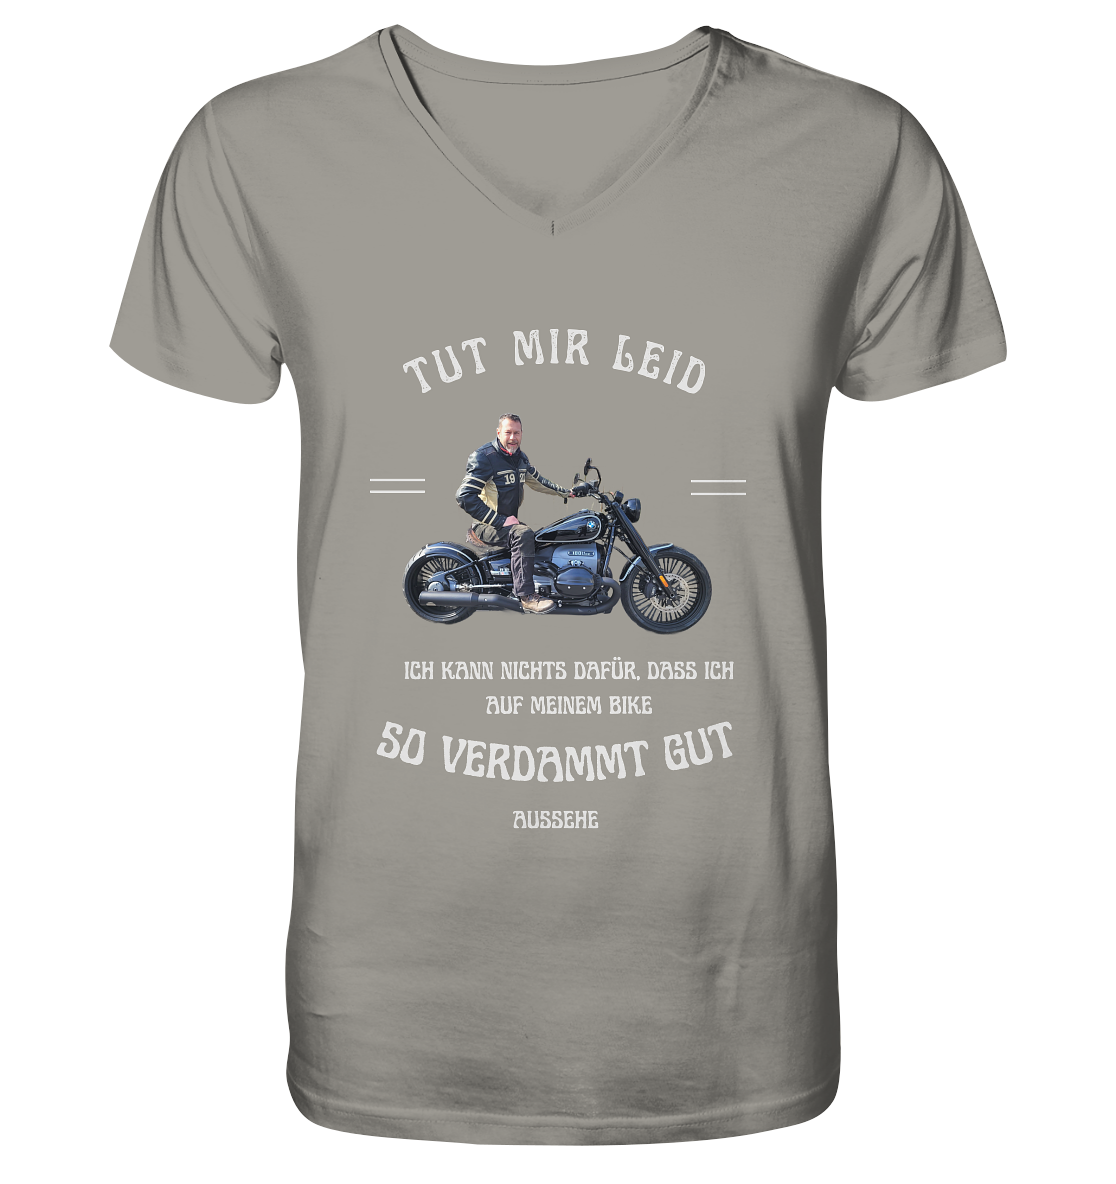 "Tut mir leid, ich kann nichts dafür, dass ich auf meinem Bike so verdammt gut aussehe" _ für Jürgen | individualisiertes Shirt mit V-Ausschnitt, personalisiertem Foto mit Motorrad-Spruch in hellem Design